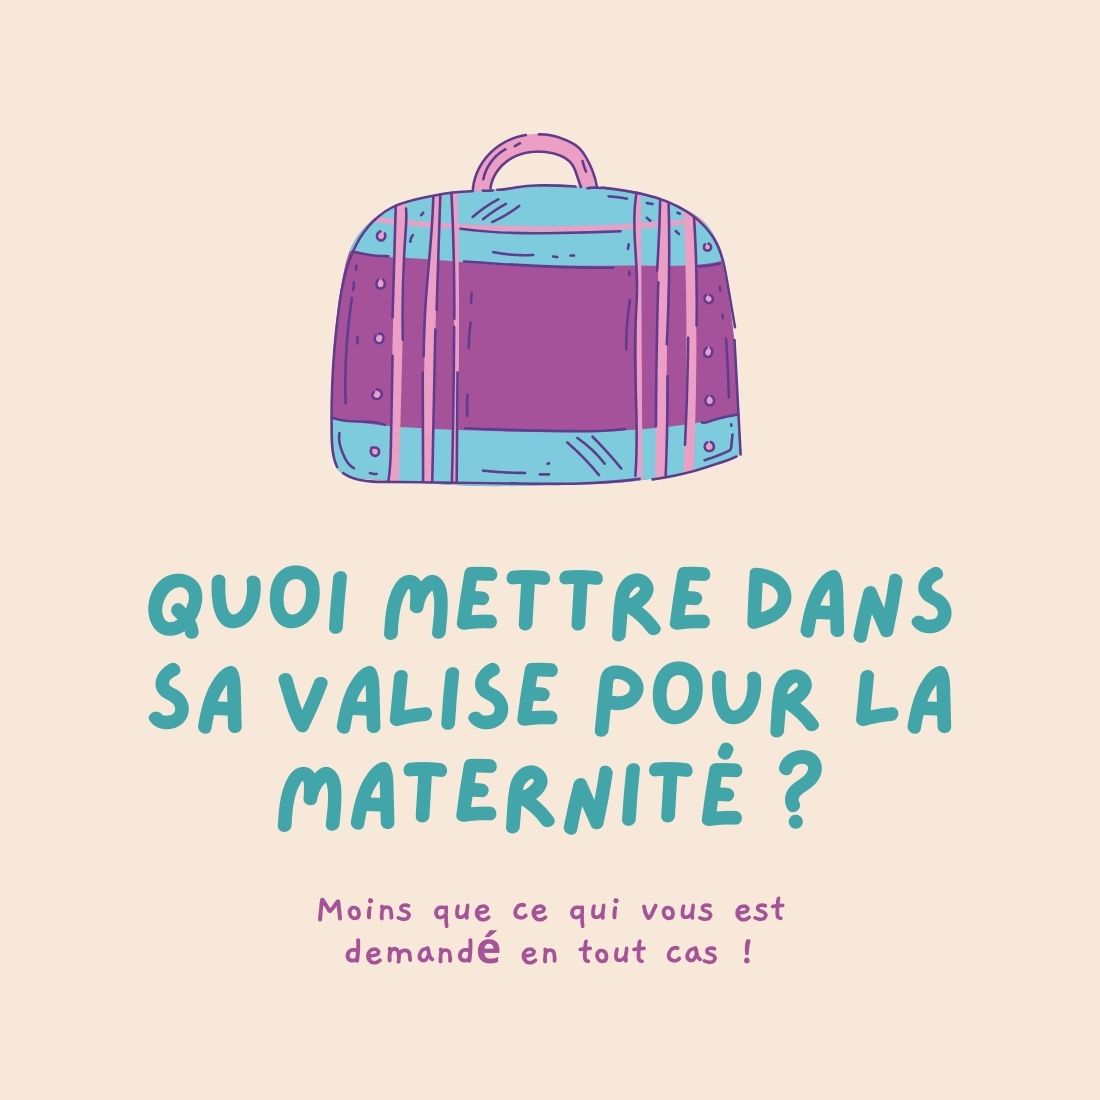 Valise de maternité - Préparez votre valise pour ne rien oublier